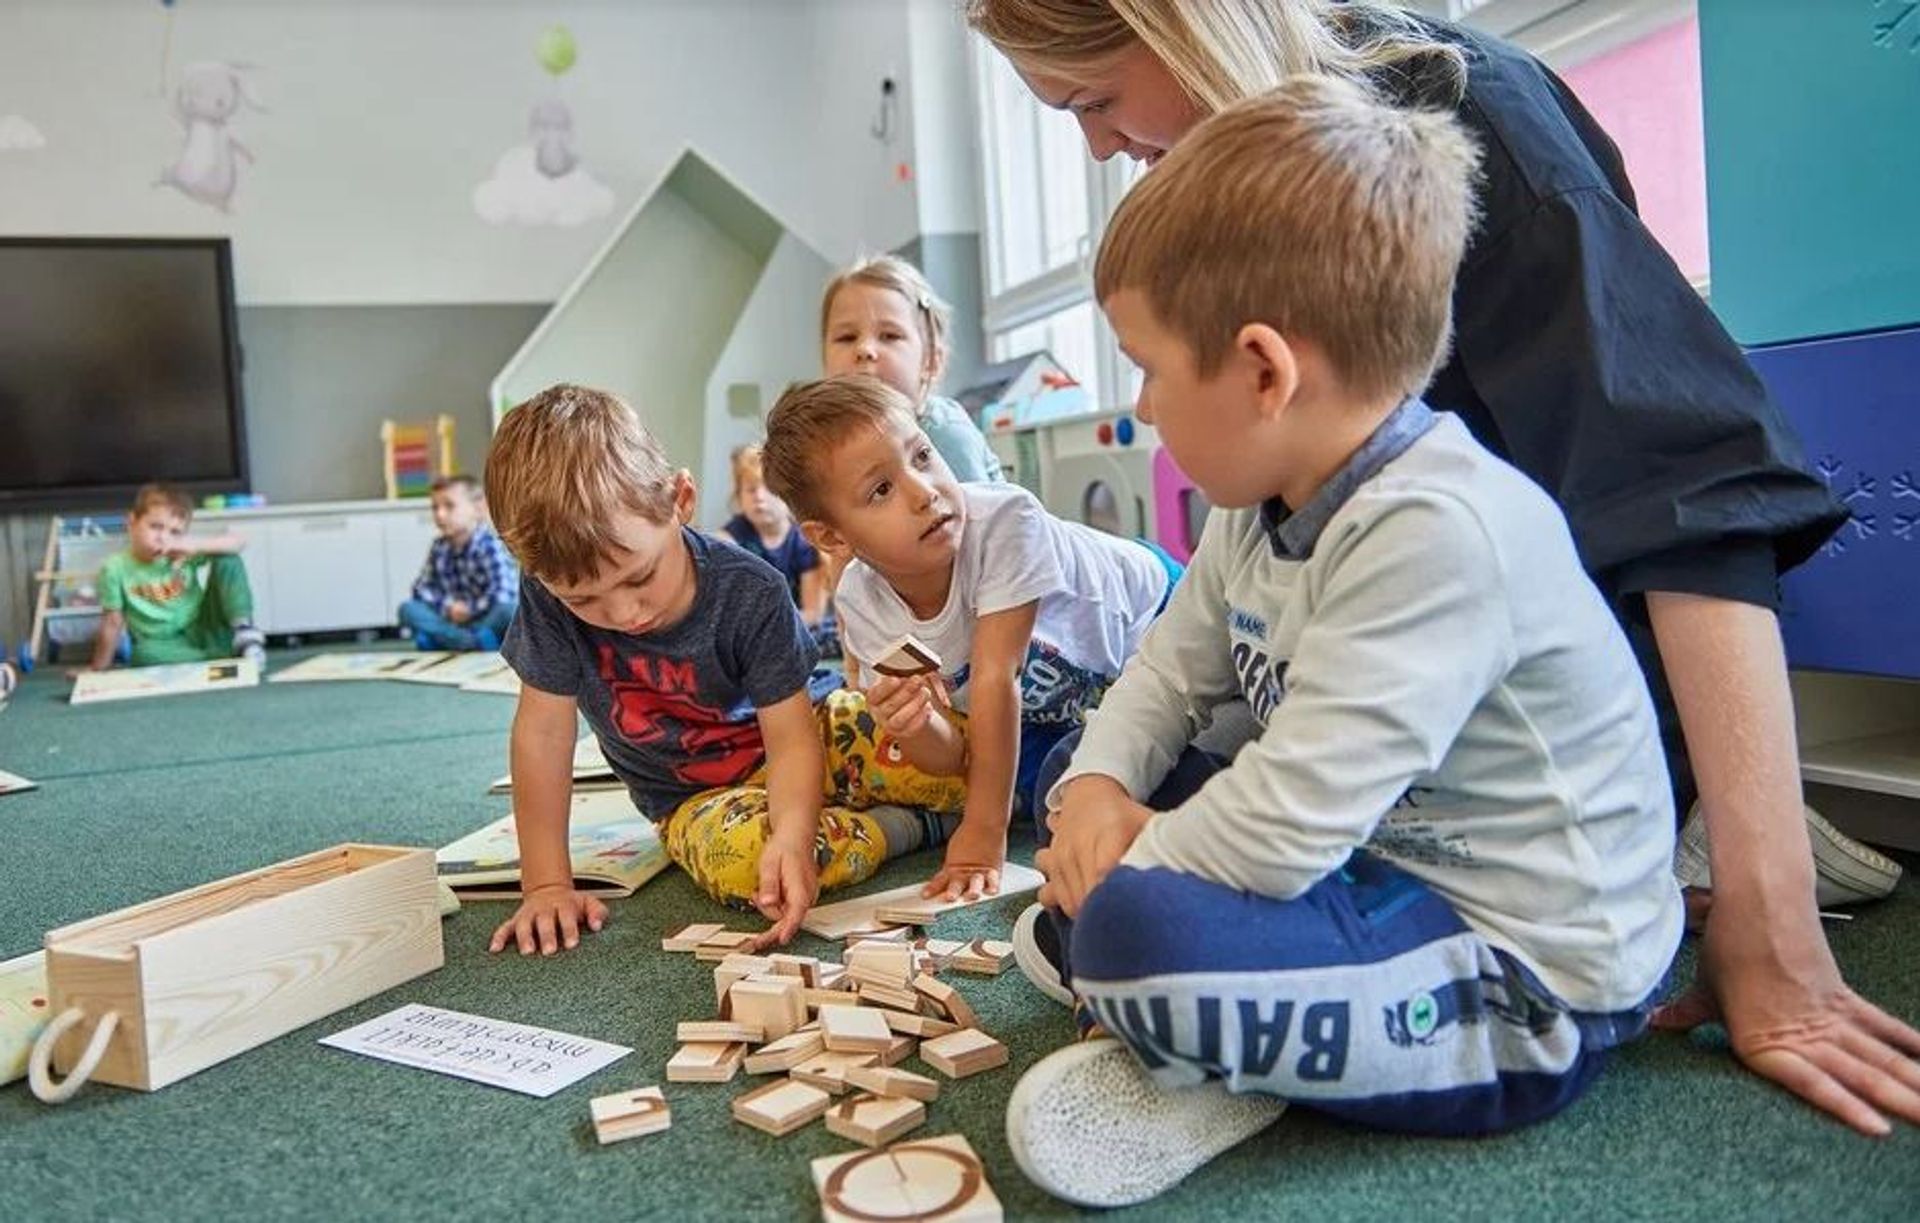 W Łodzi powstaną dwa nowe przedszkola. Kolejne szkoły do rozbudowy i modernizacji